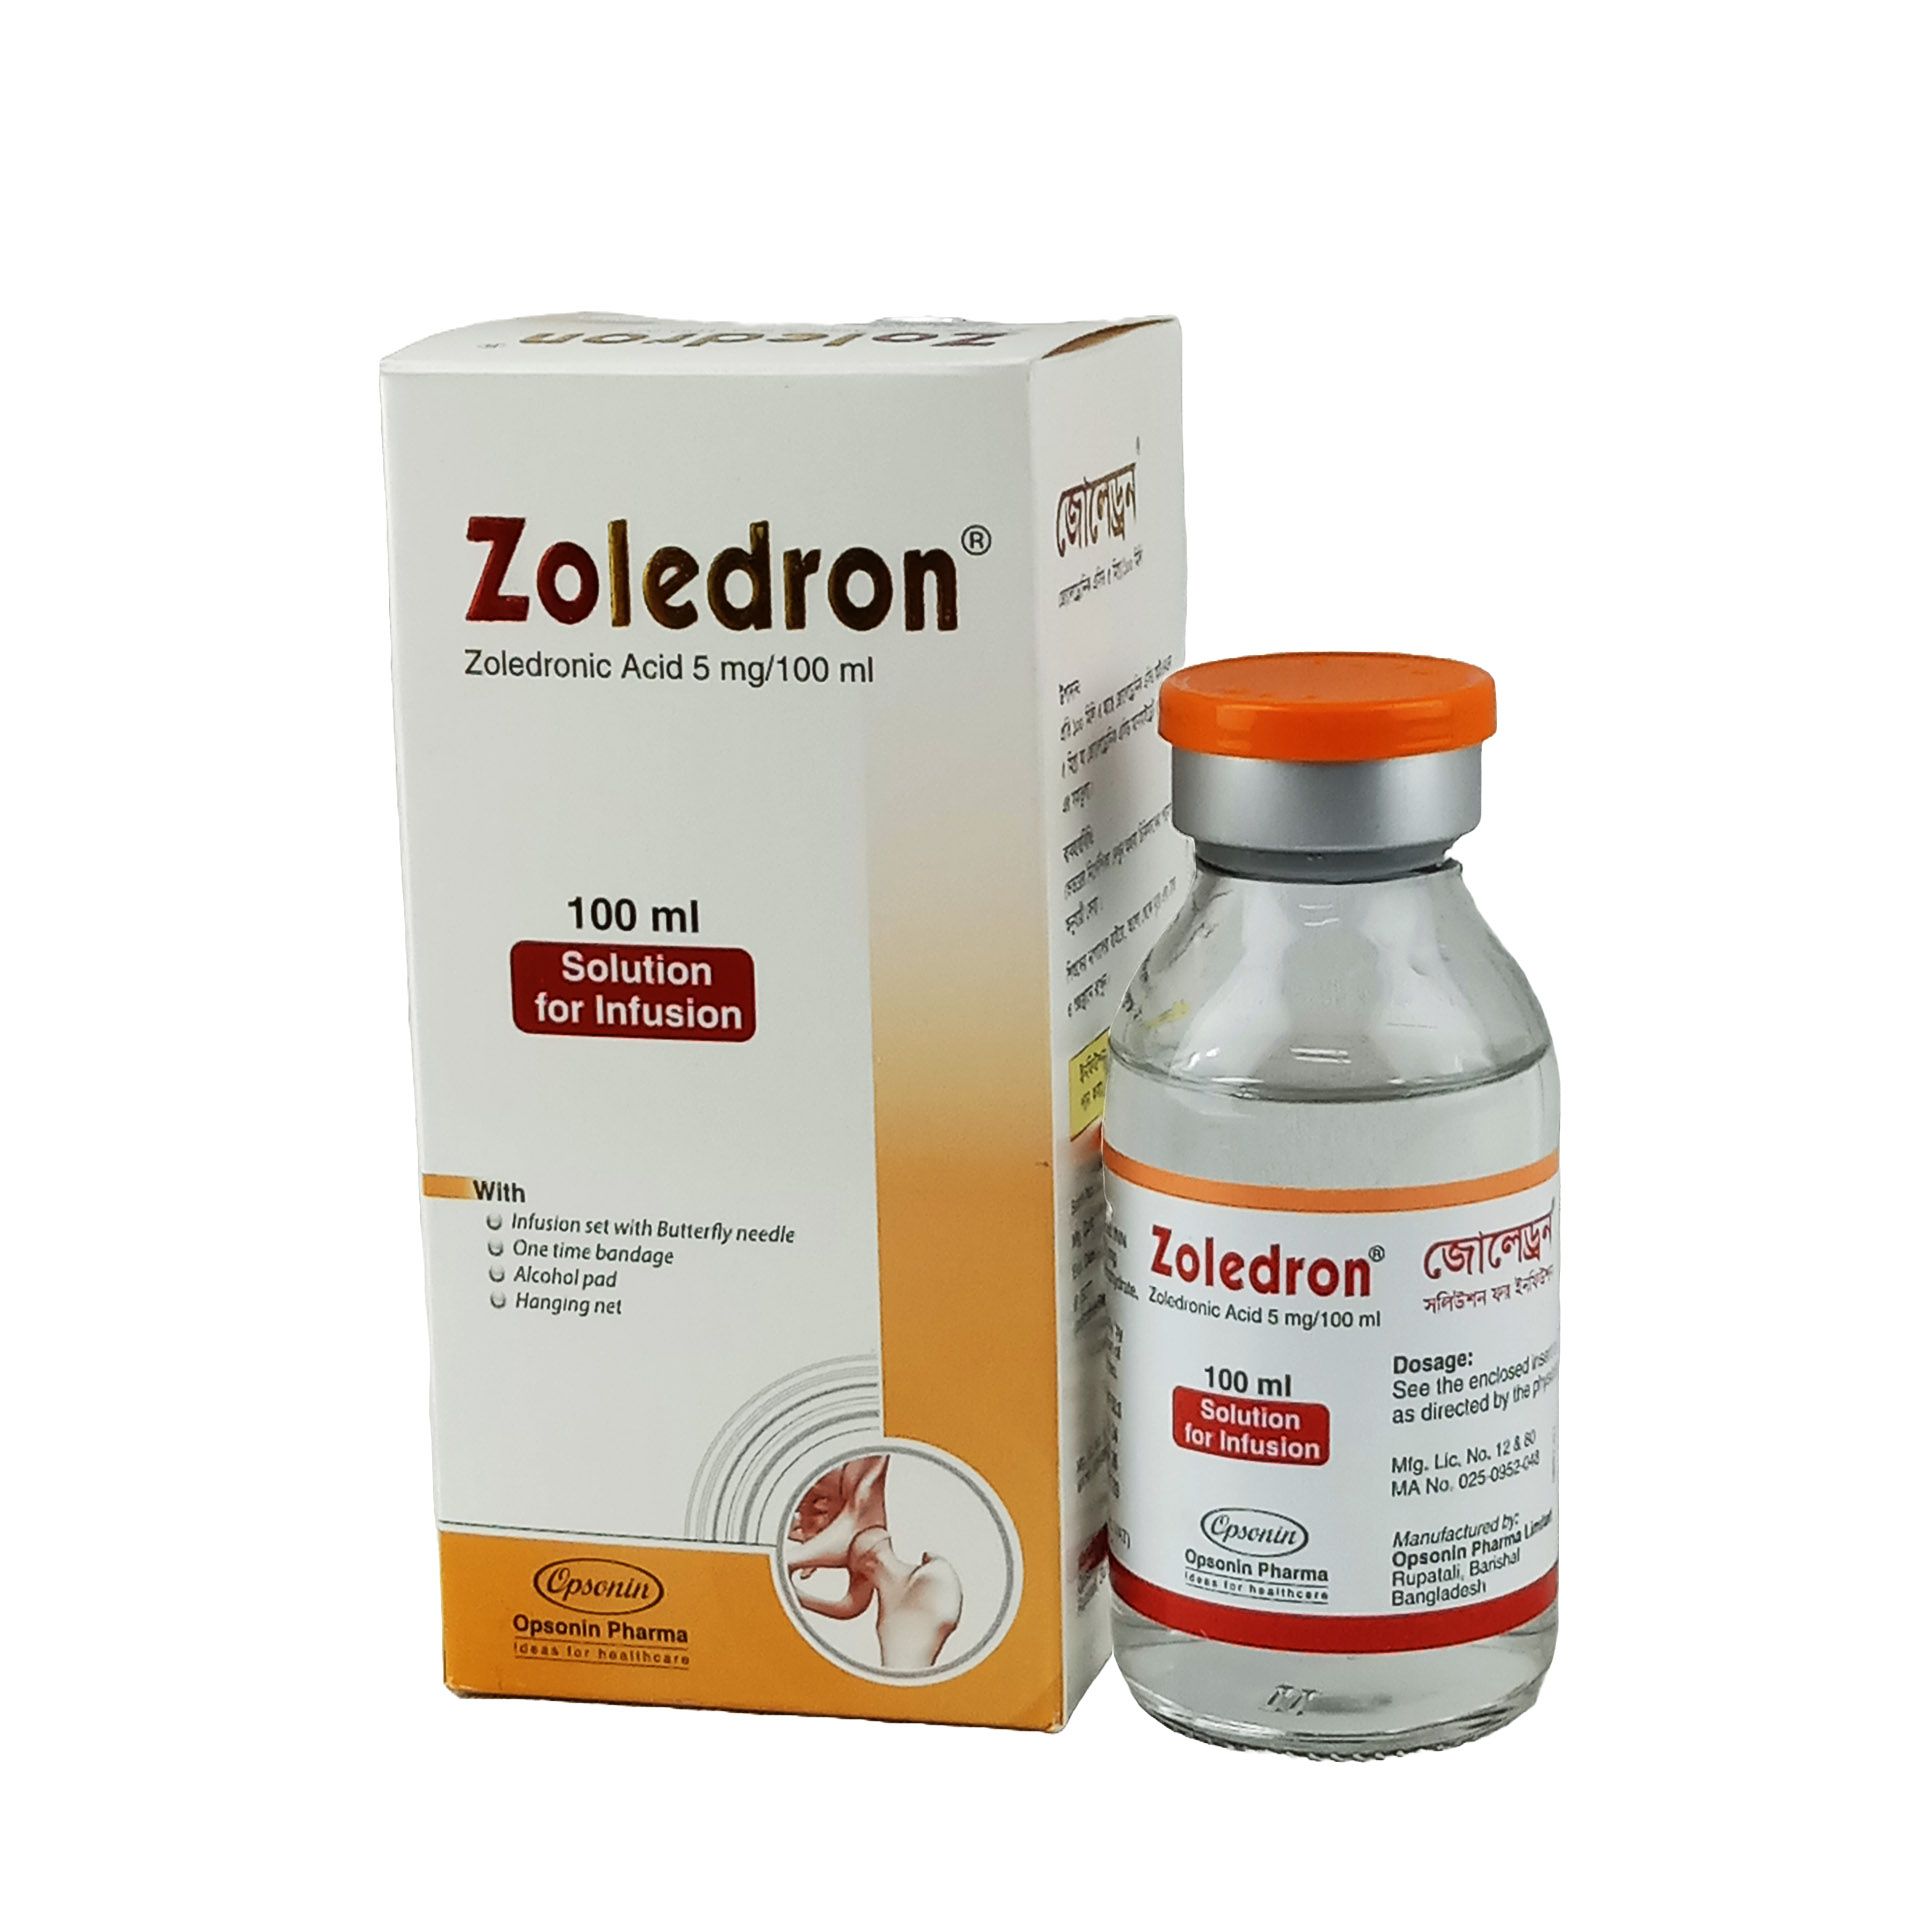 Zoledron 5mg/100ml IV Infusion